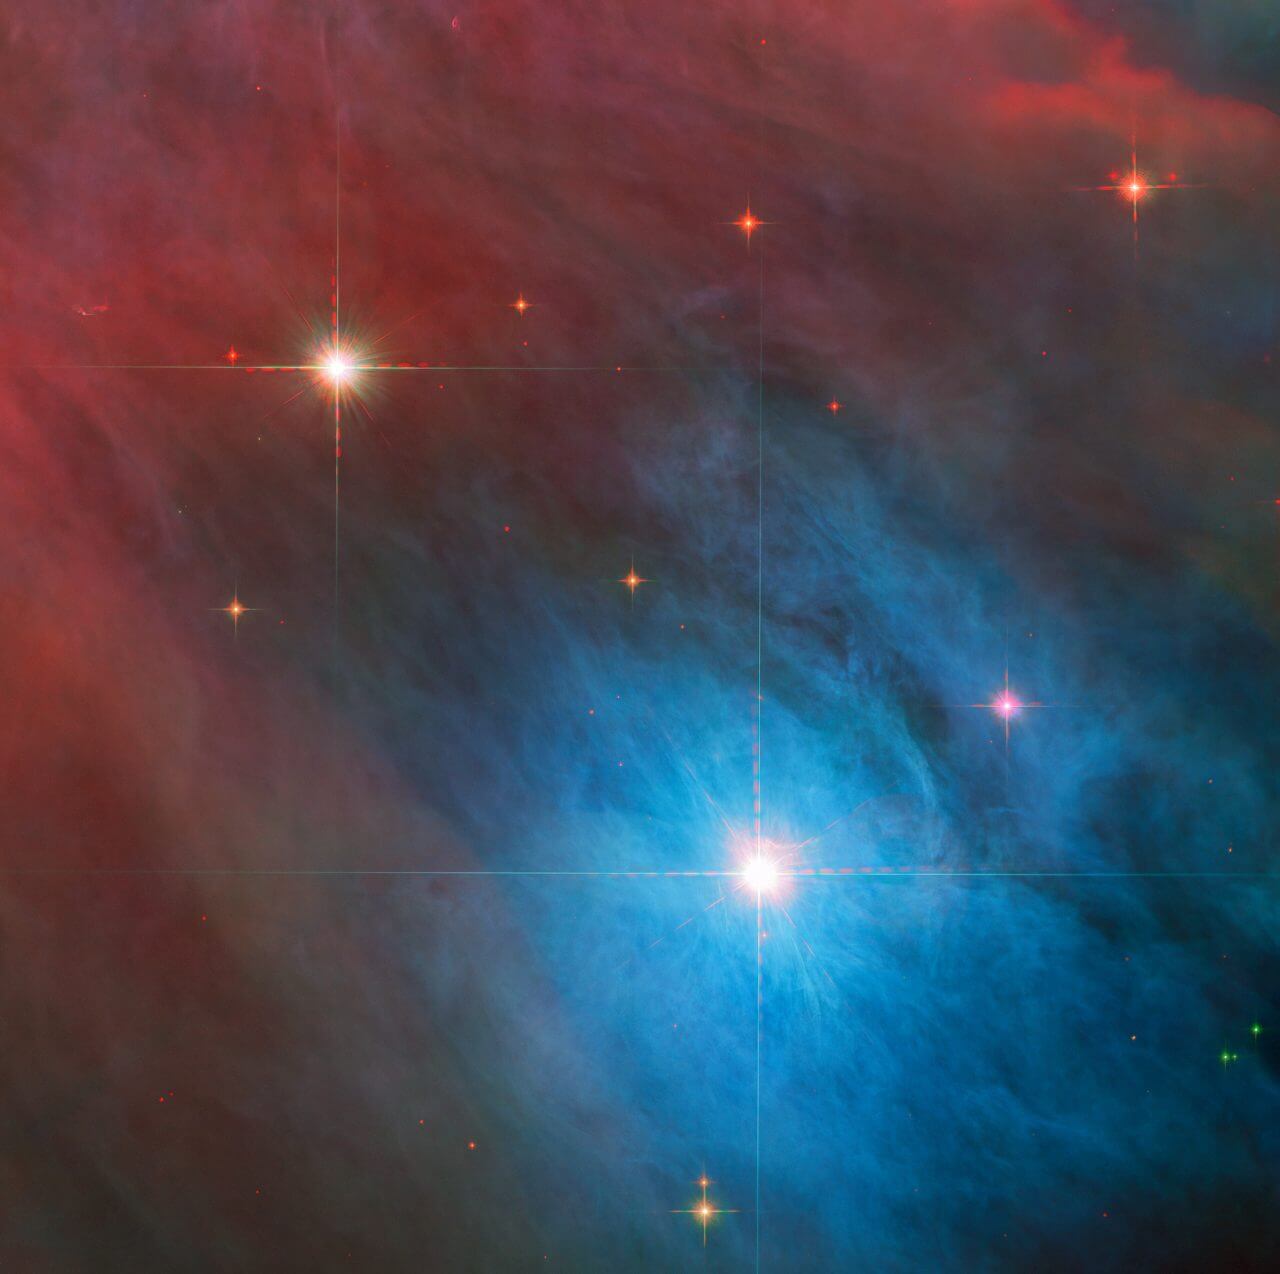 【▲ 変光星「オリオン座V372星（V 372 Orionis）」とその周辺（Credit: ESA/Hubble &amp; NASA, J. Bally, M. Robberto）】